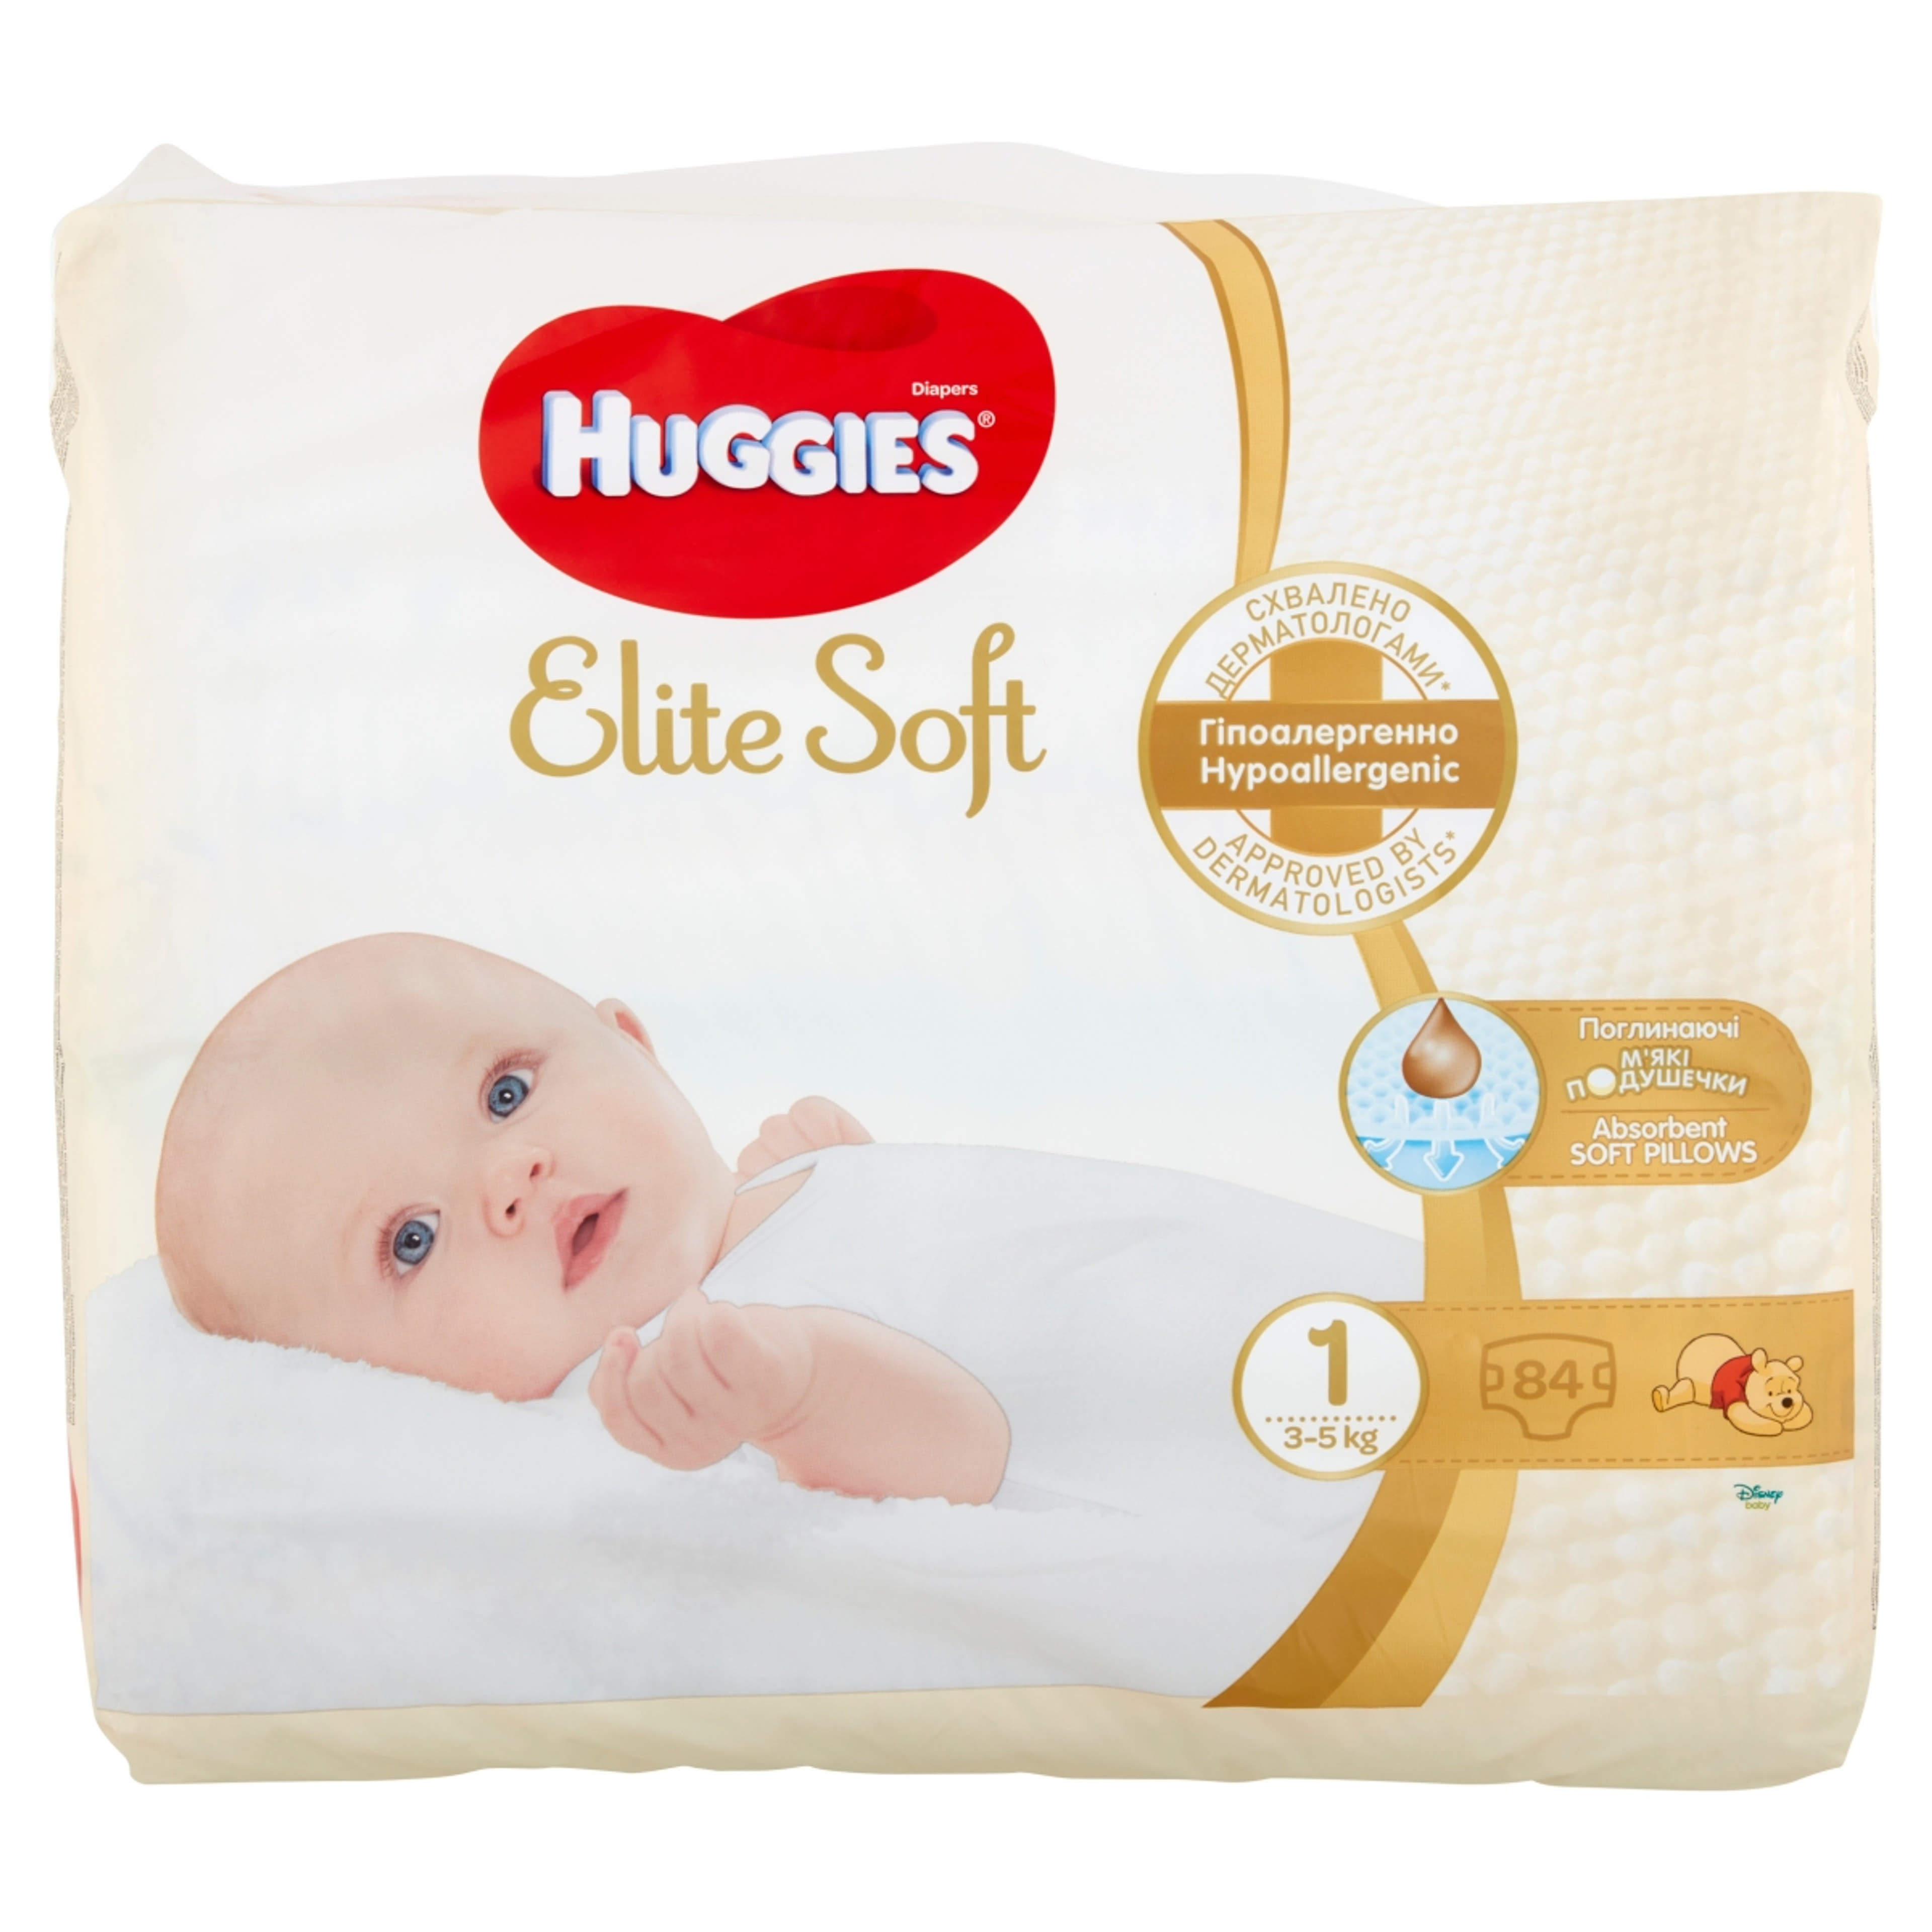 Huggies Elite Soft 1 újszülött nadrágpelenka 3-5 kg - 84 db